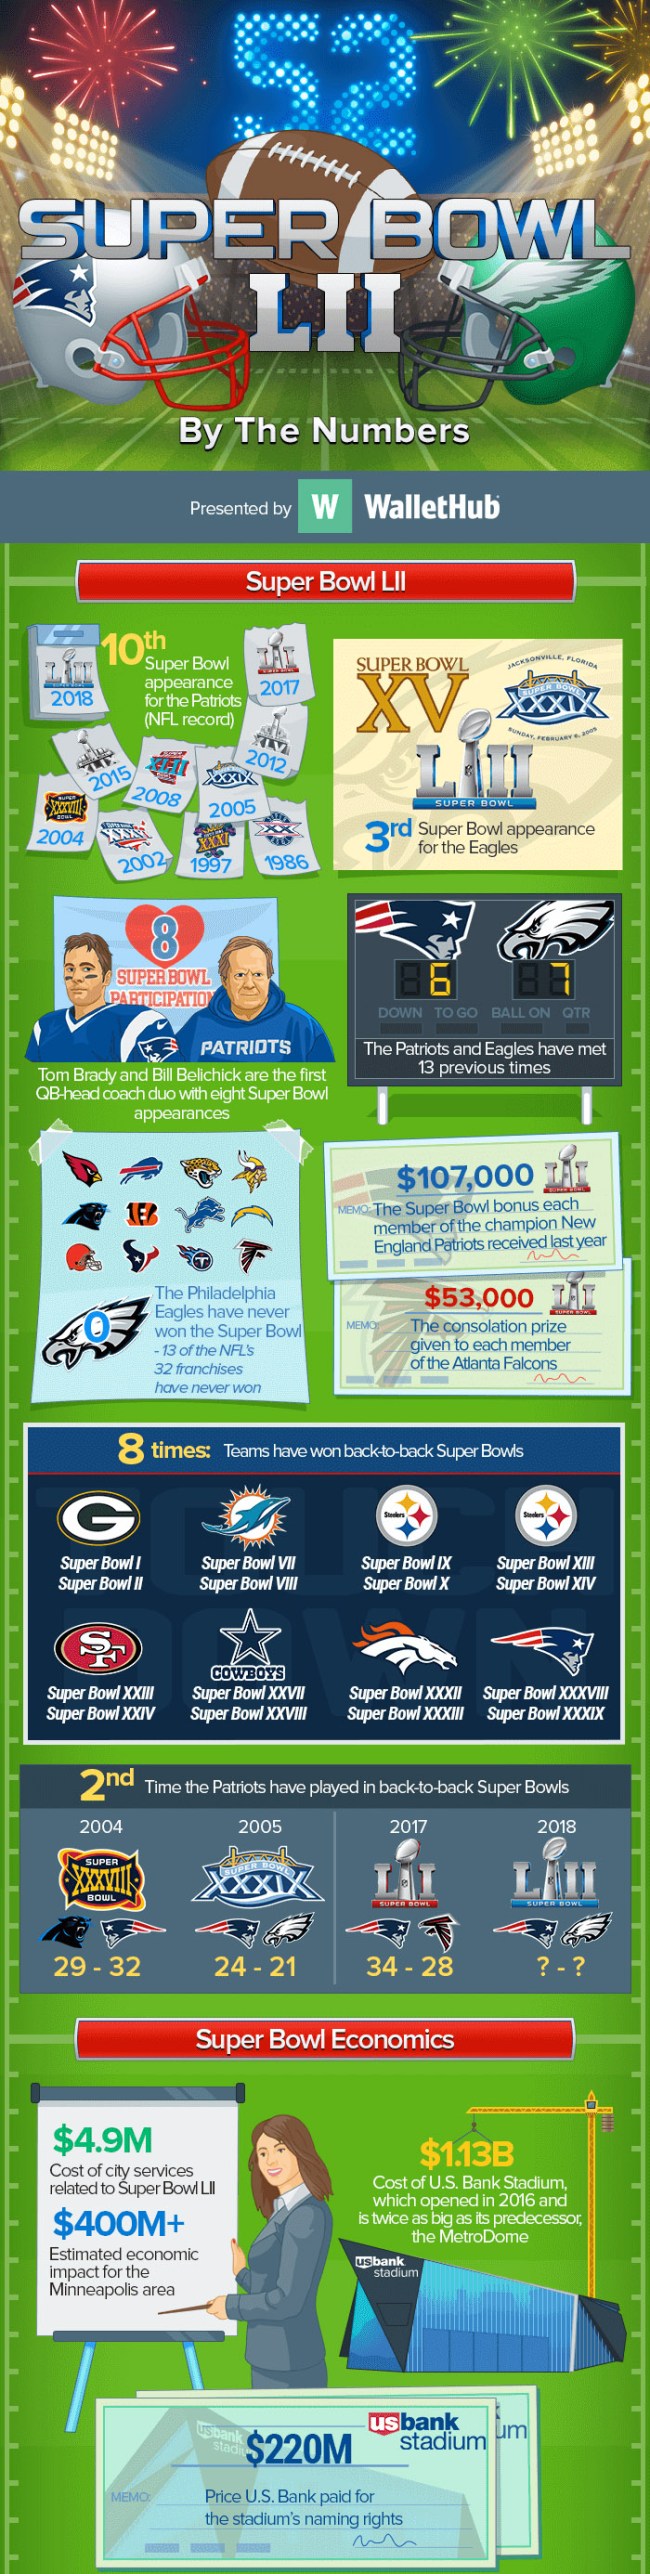 Super Bowl LII Trivia